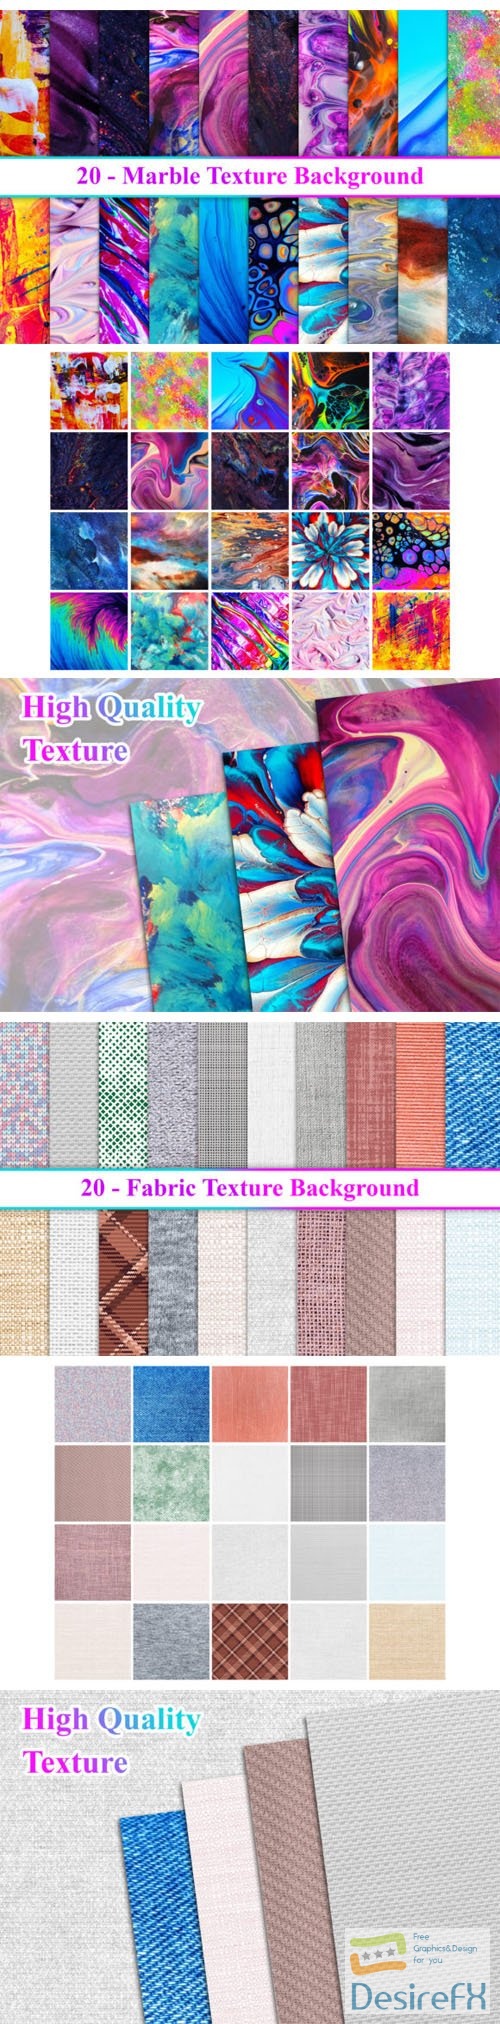 4 Fantastic Textures Bundles - 60 Backgrounds